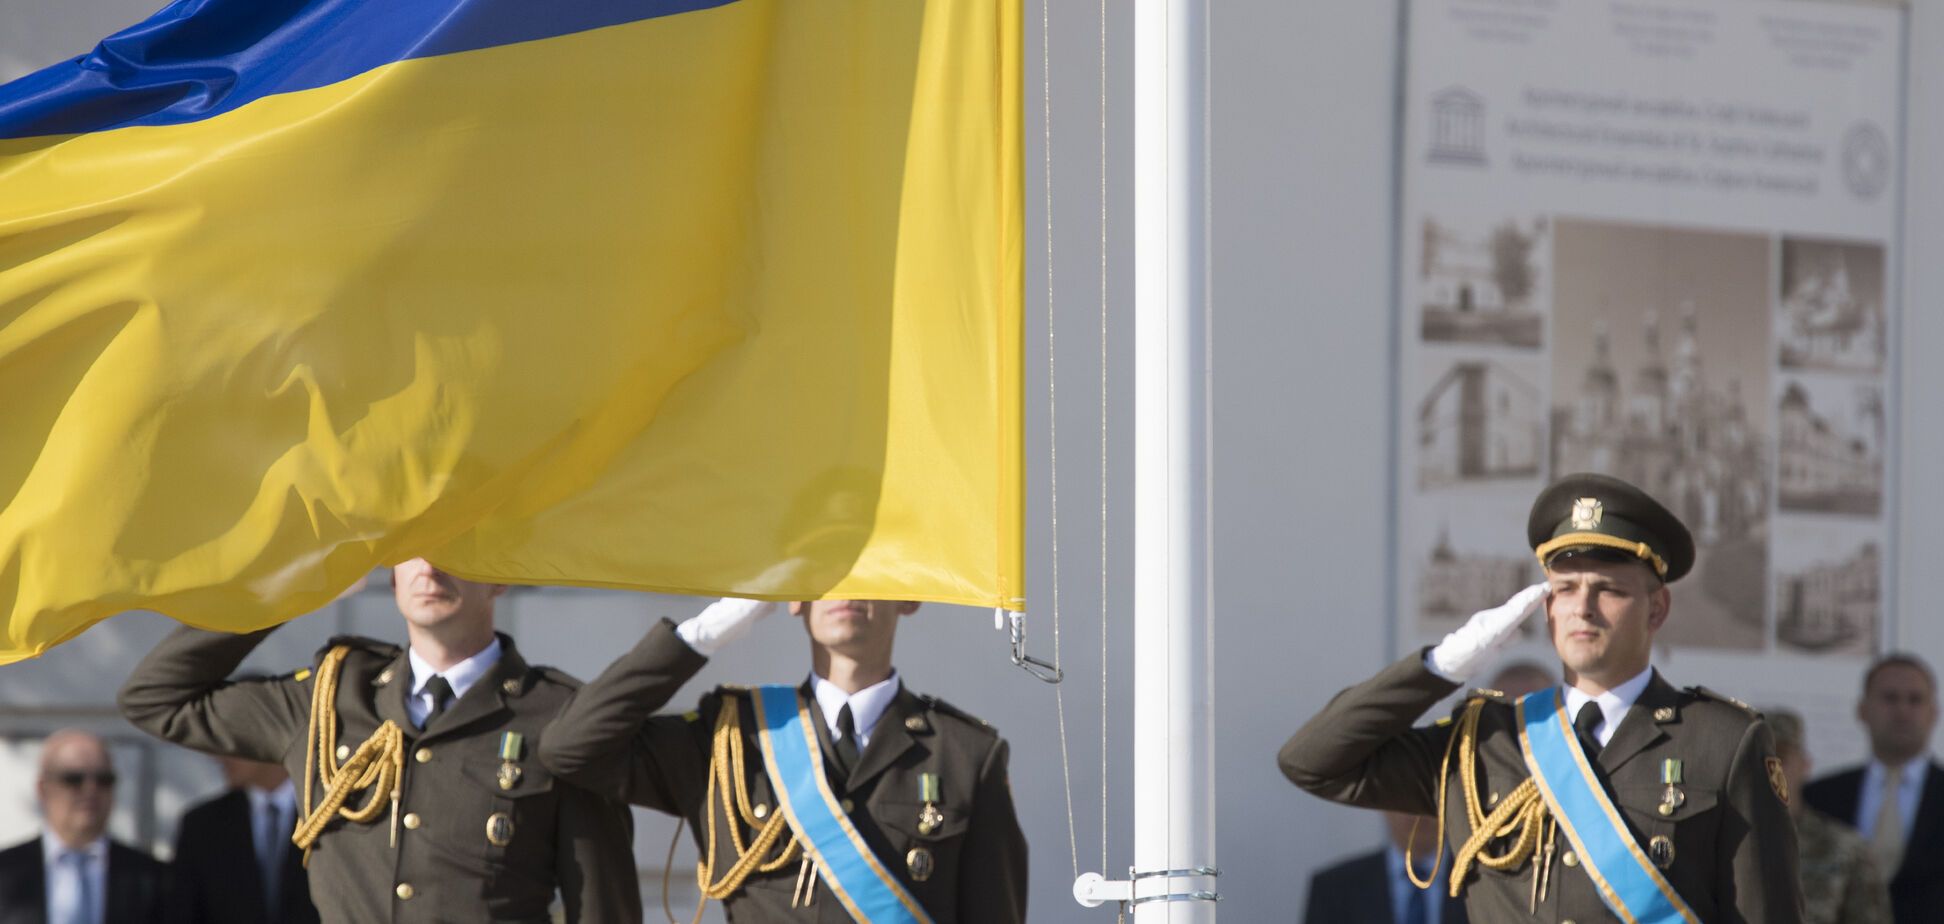 Зібралися разом: в мережі показали унікальне фото з президентами України